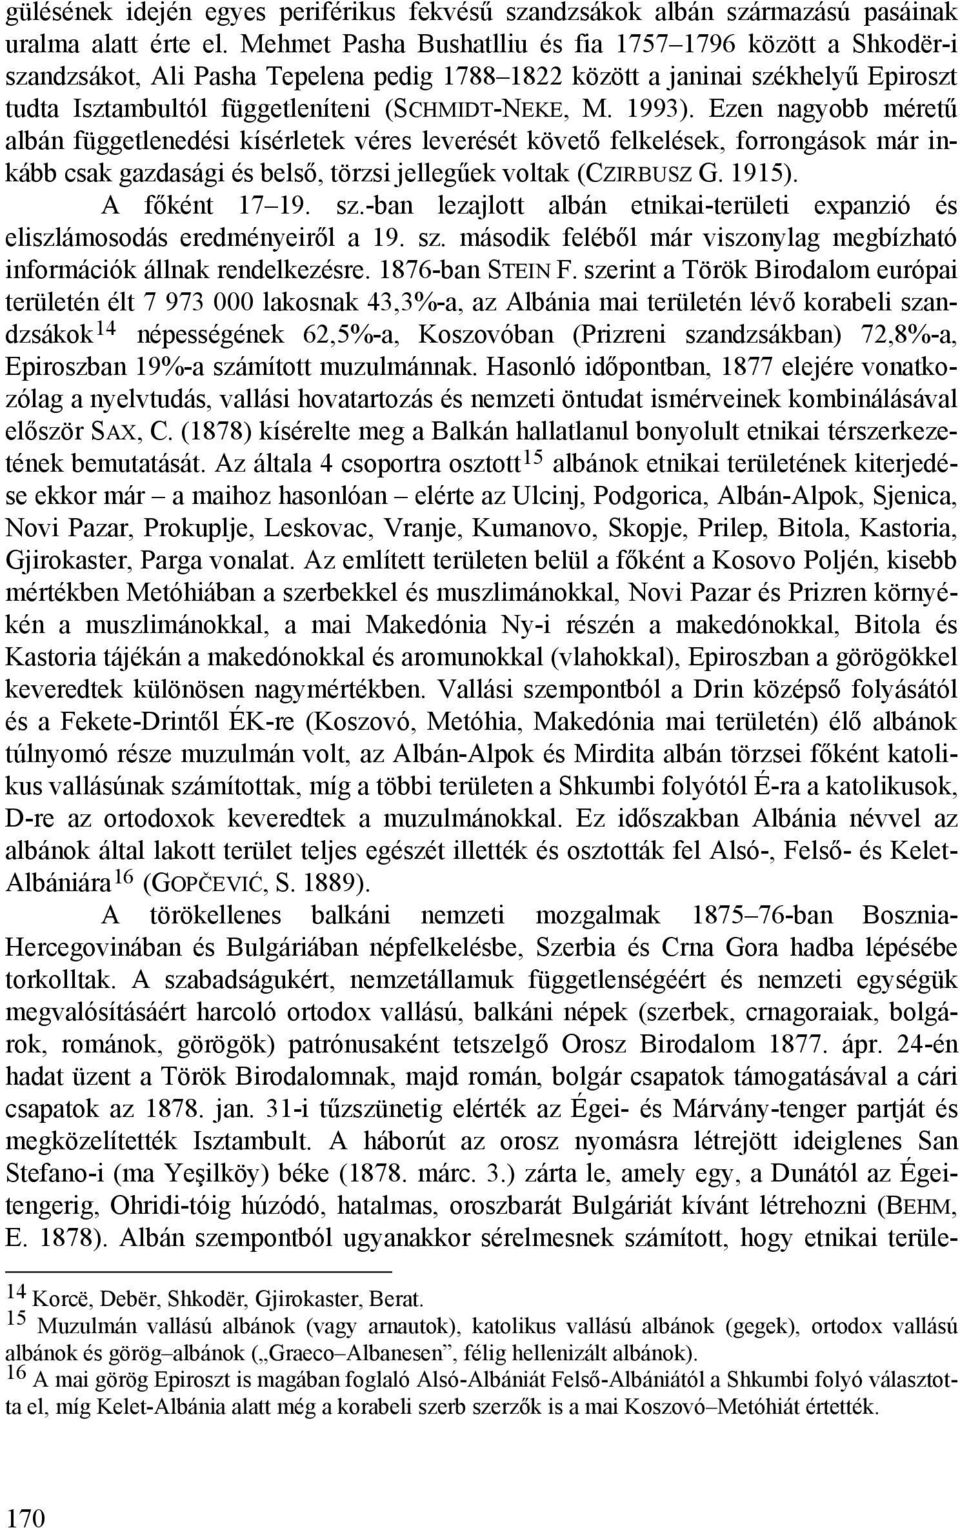 1993). Ezen nagyobb méretű albán függetlenedési kísérletek véres leverését követő felkelések, forrongások már inkább csak gazdasági és belső, törzsi jellegűek voltak (CZIRBUSZ G. 1915).